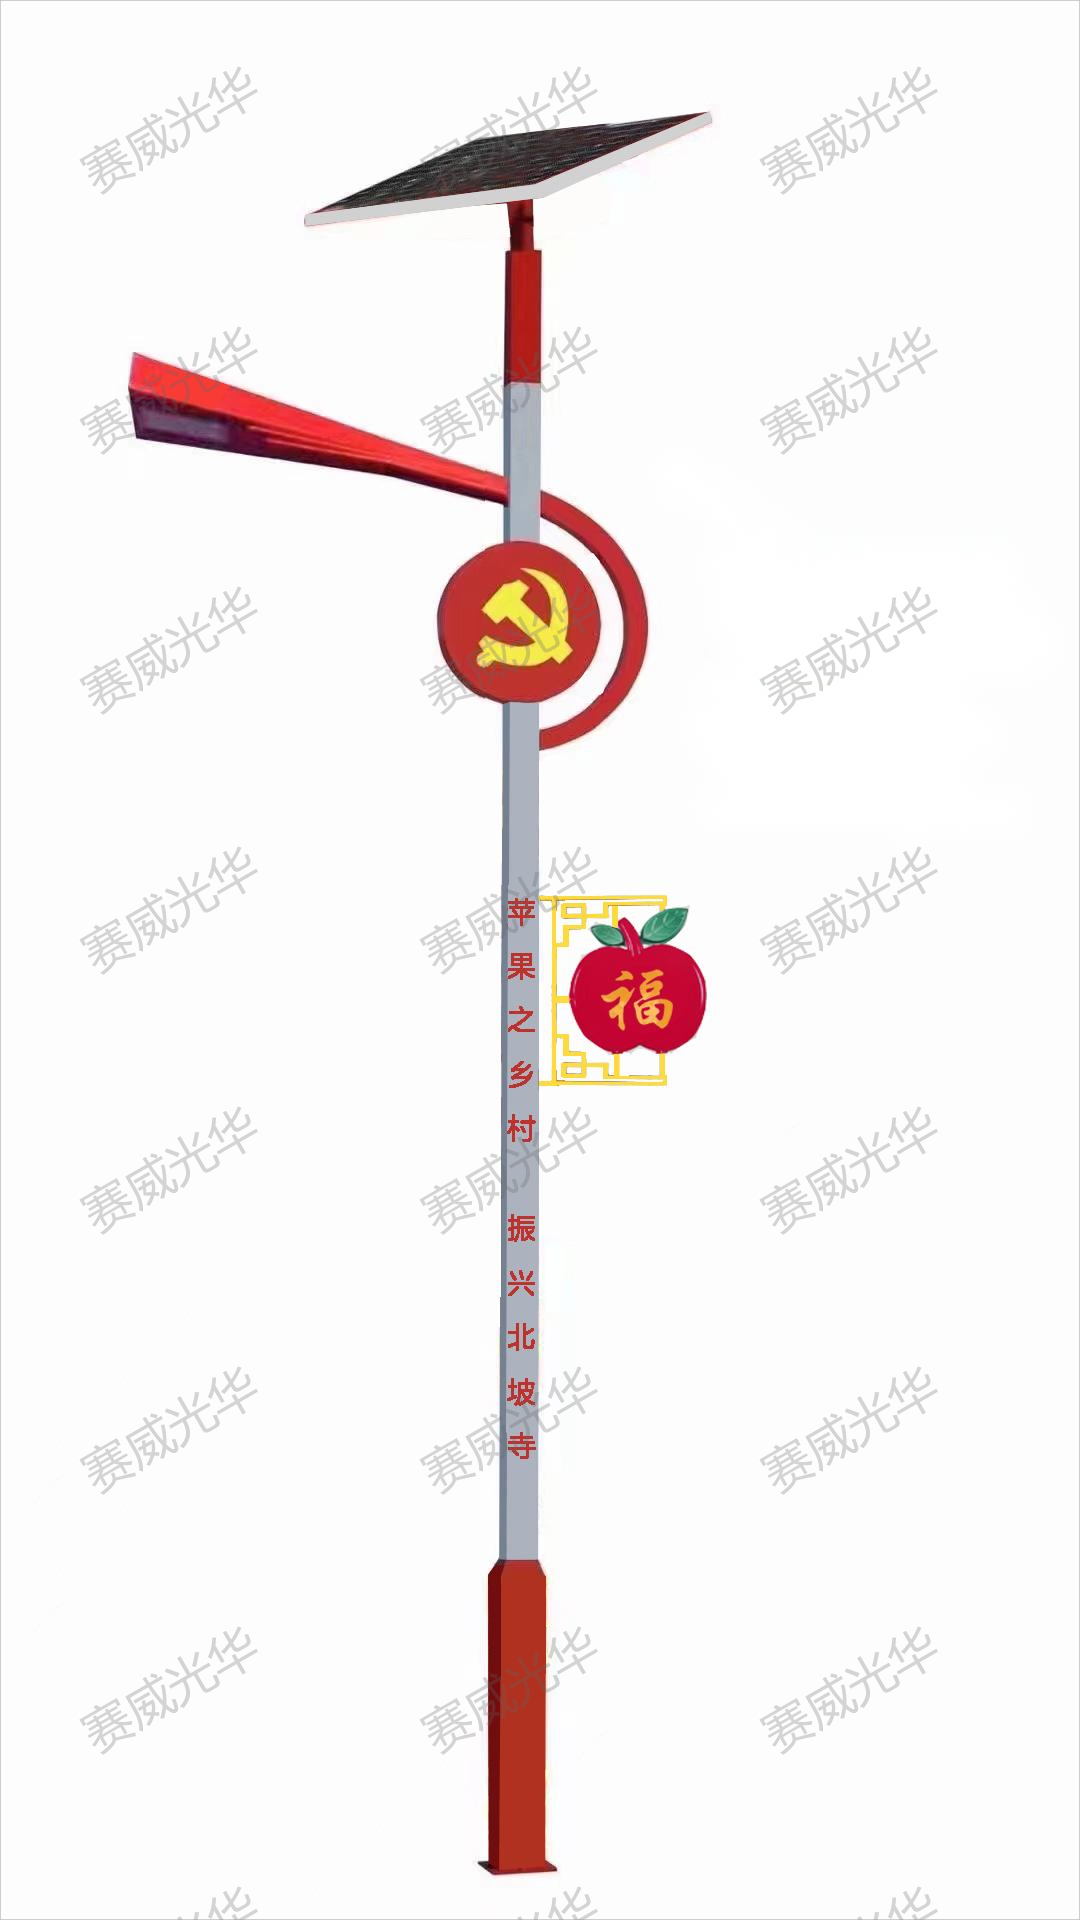 紅色黨旗太陽能路燈蘋果掛件